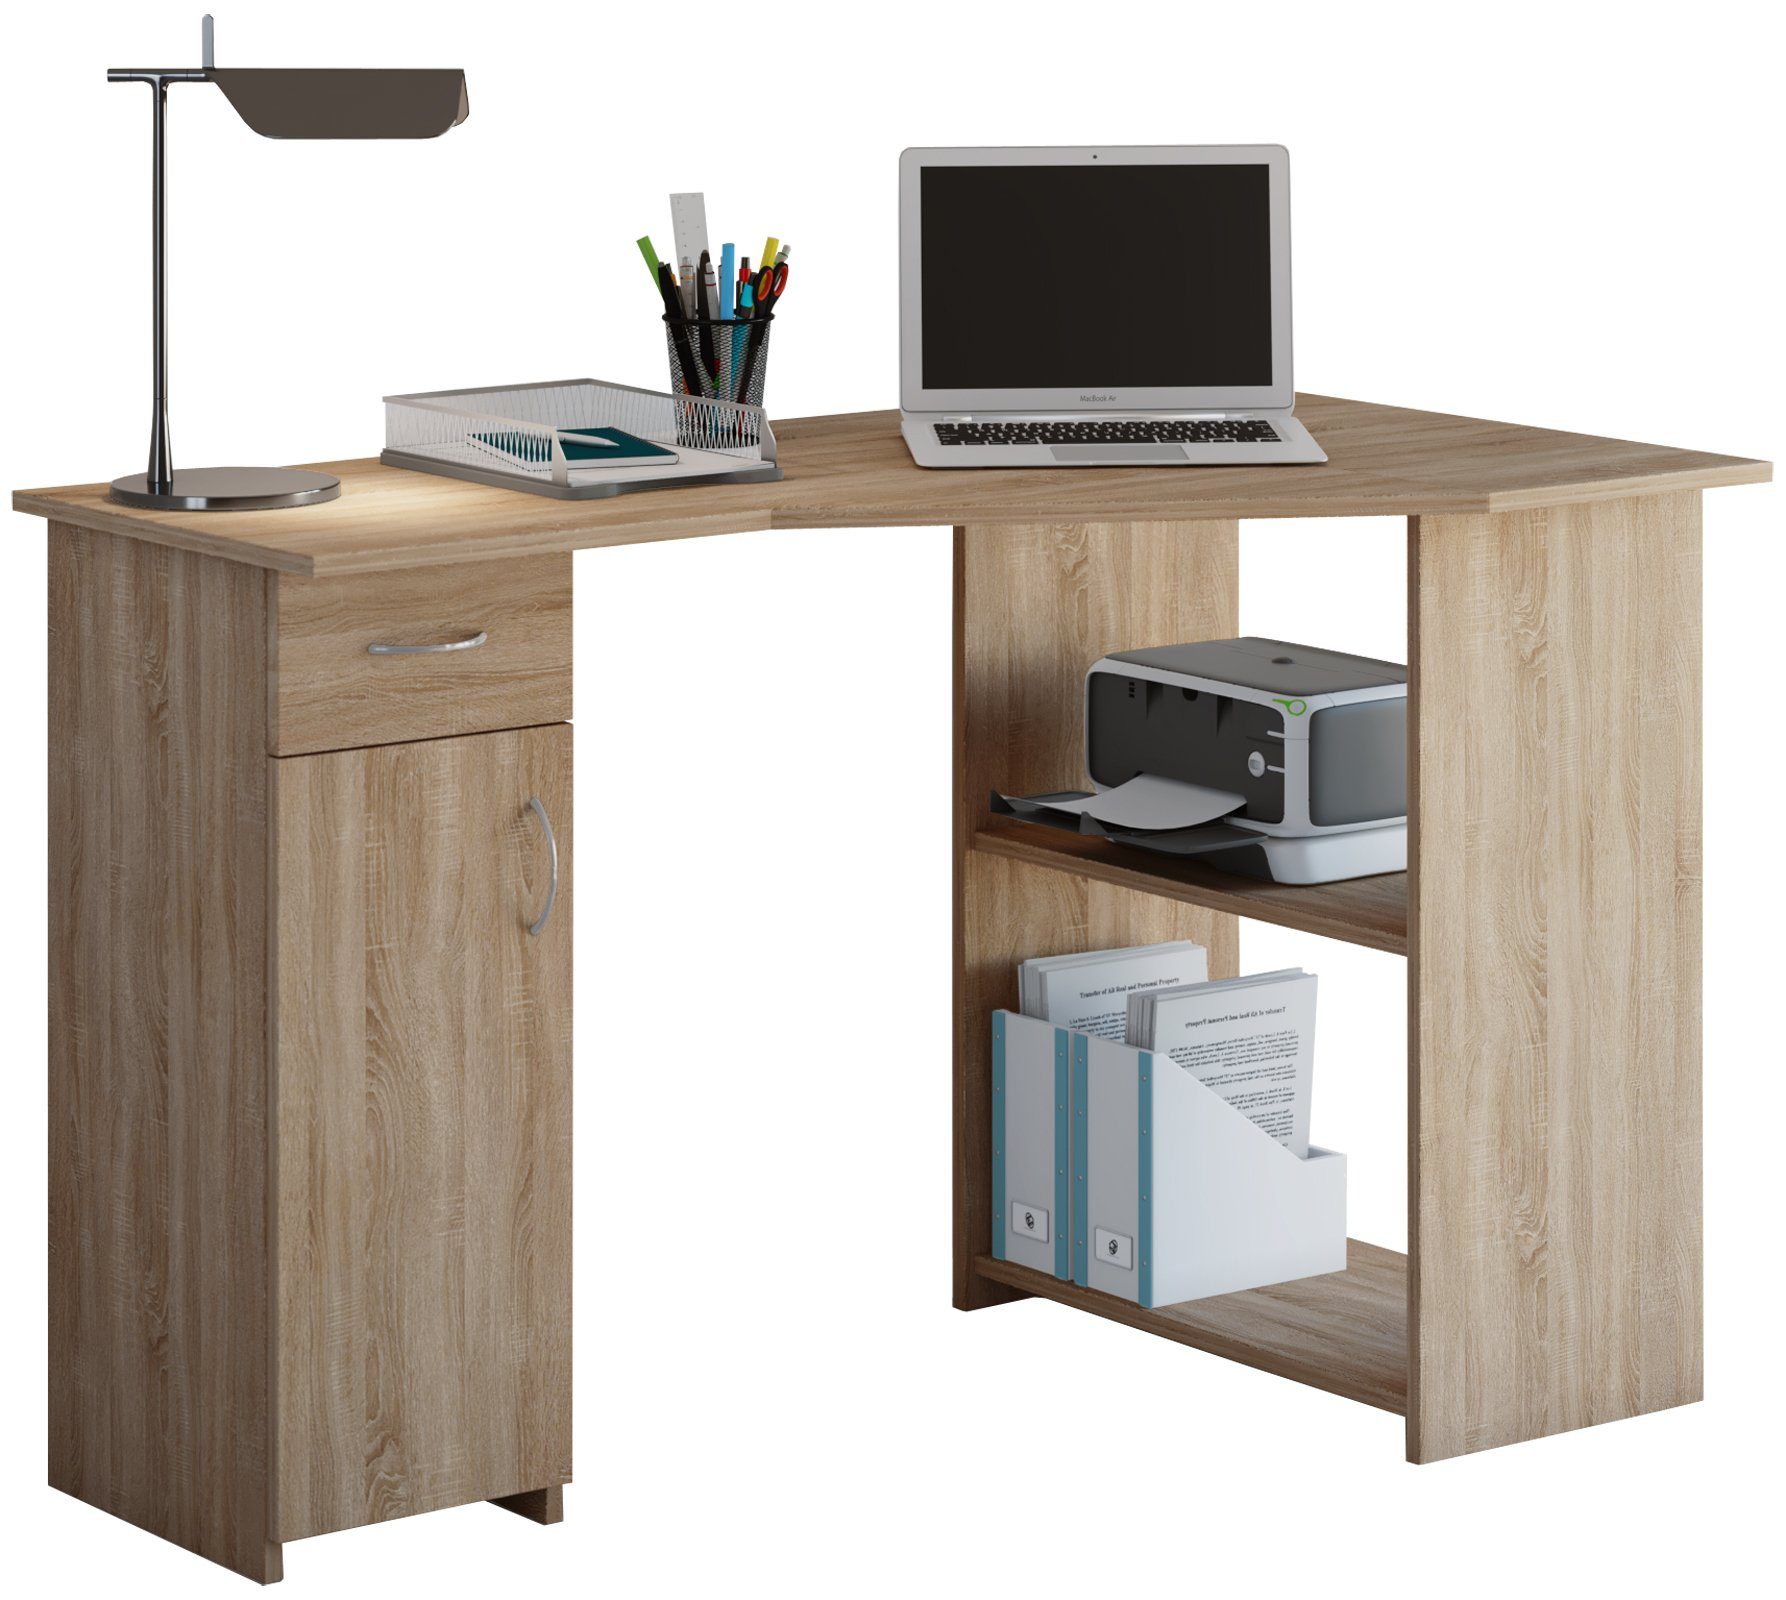 VCM Schreibtisch Schreibtisch Eckschreibtisch Sonoma-Eiche Holz Linzia Bürotisch (Sägerau)